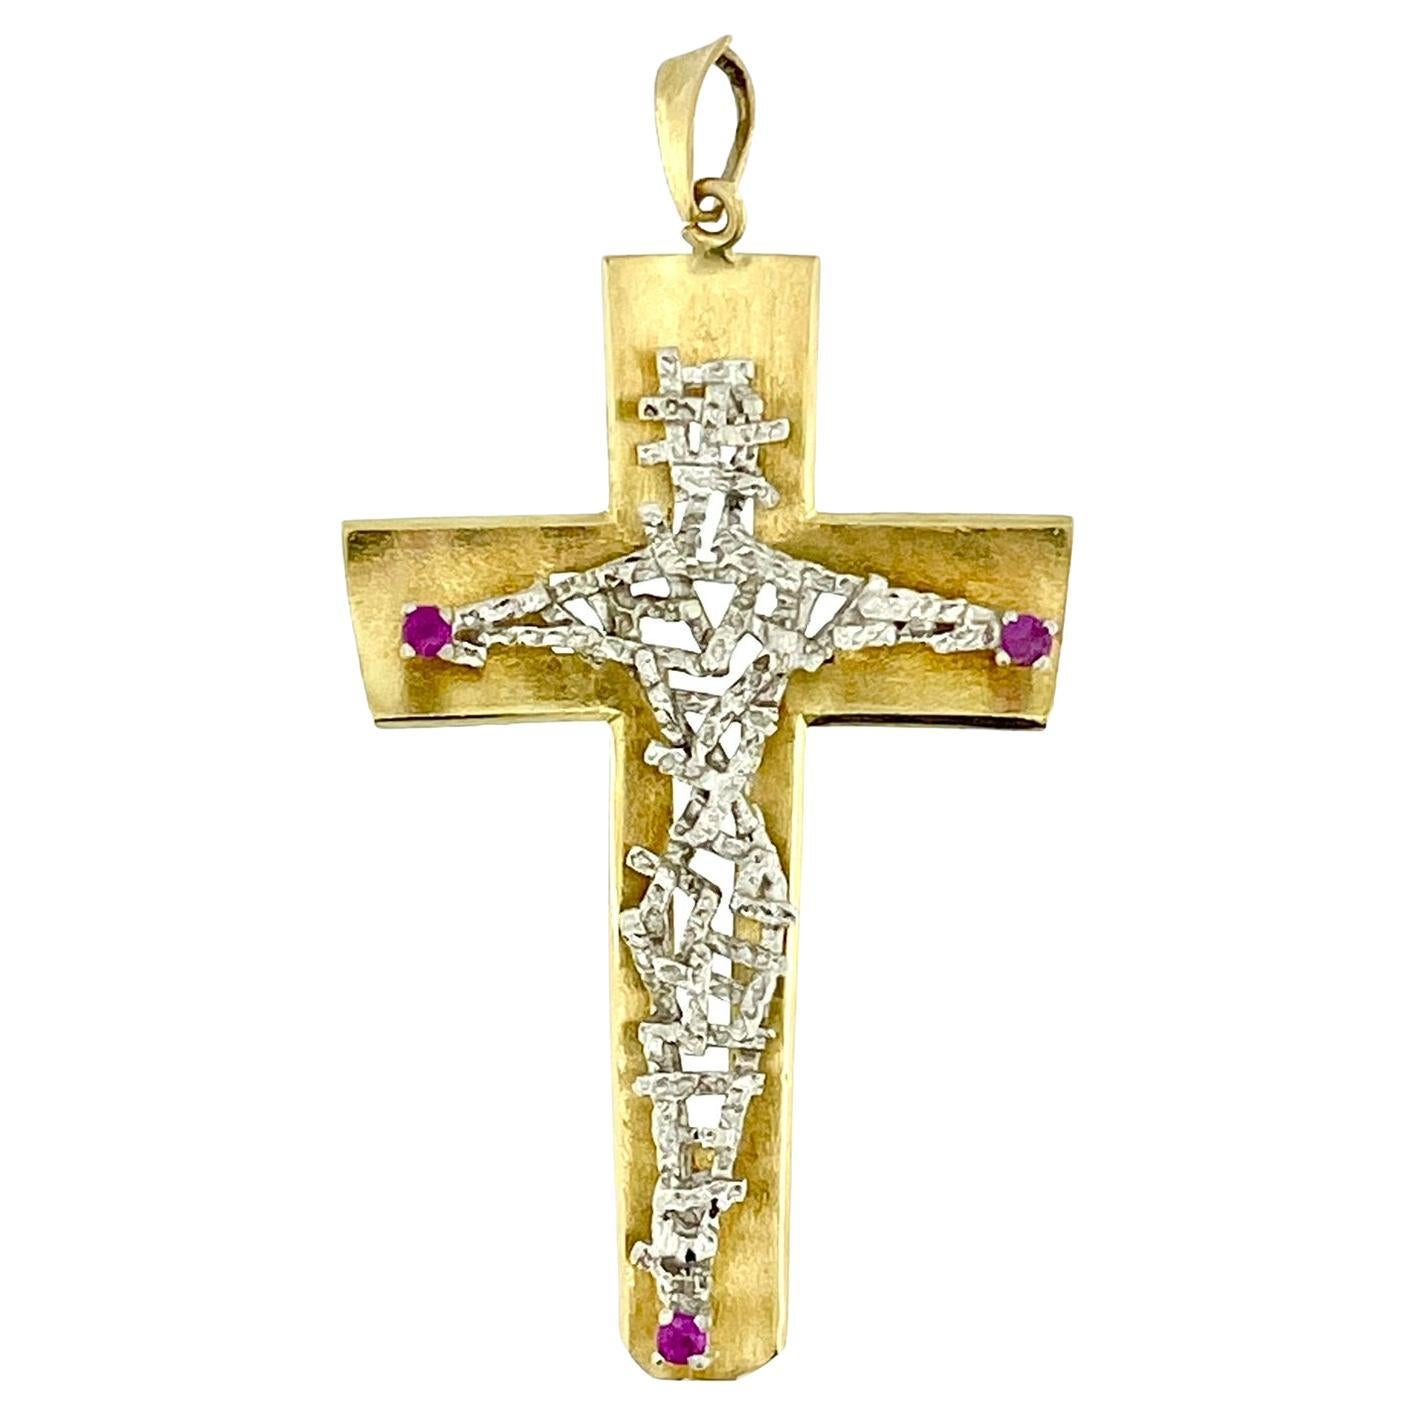 Handgefertigtes italienisches Kruzifix aus 18 Karat Gold mit Rubinen